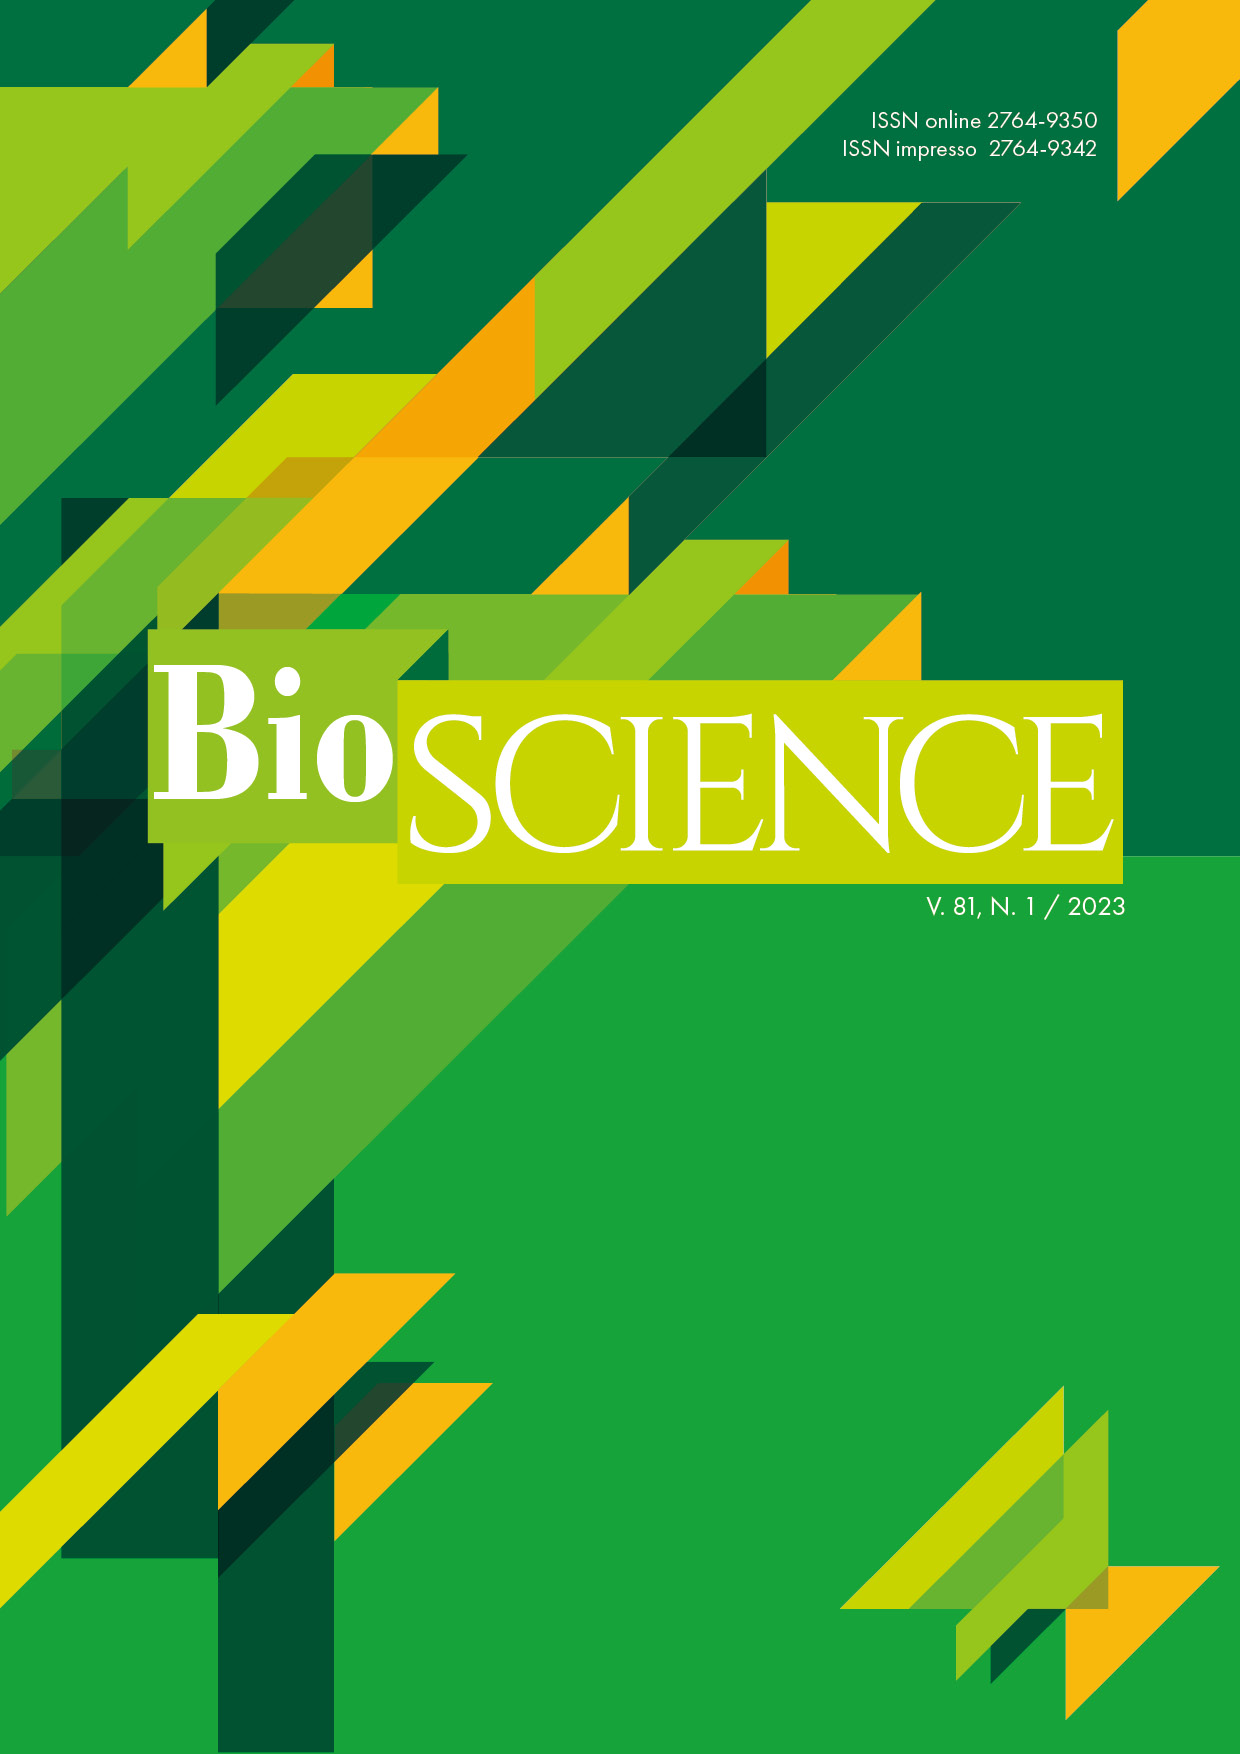 					Visualizar v. 81 n. 1 (2023): BioSCIENCE
				